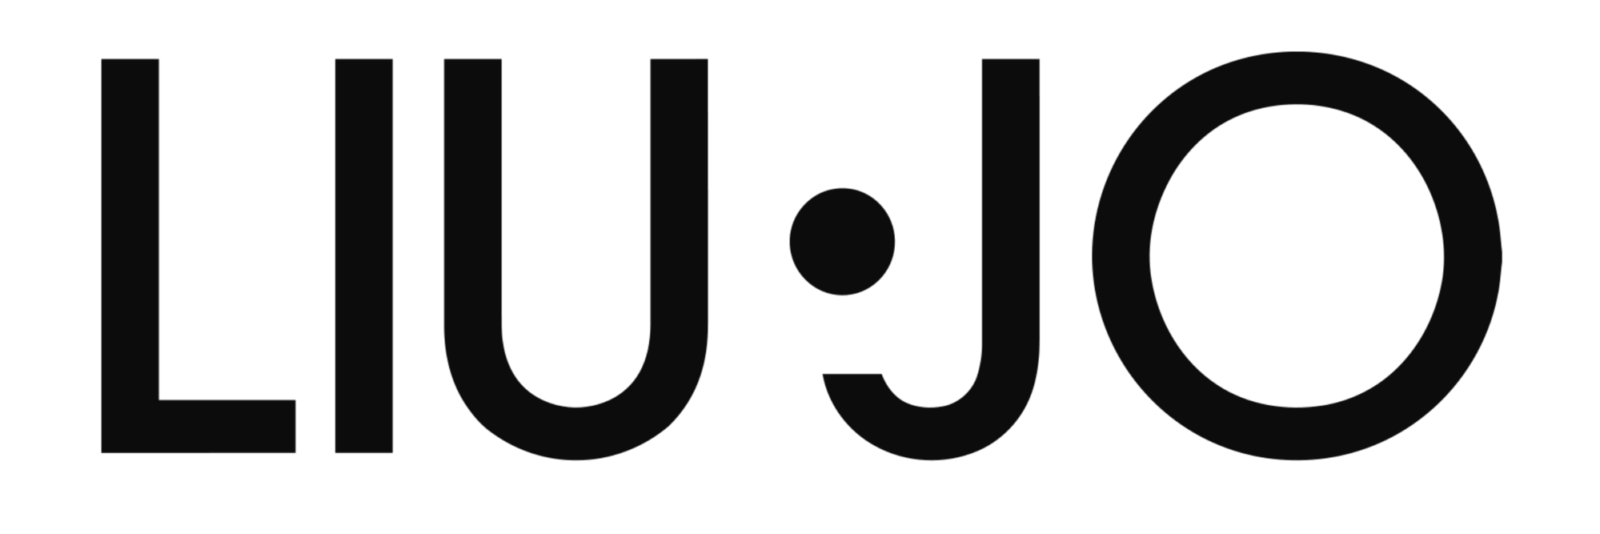 Liu Jo Logo